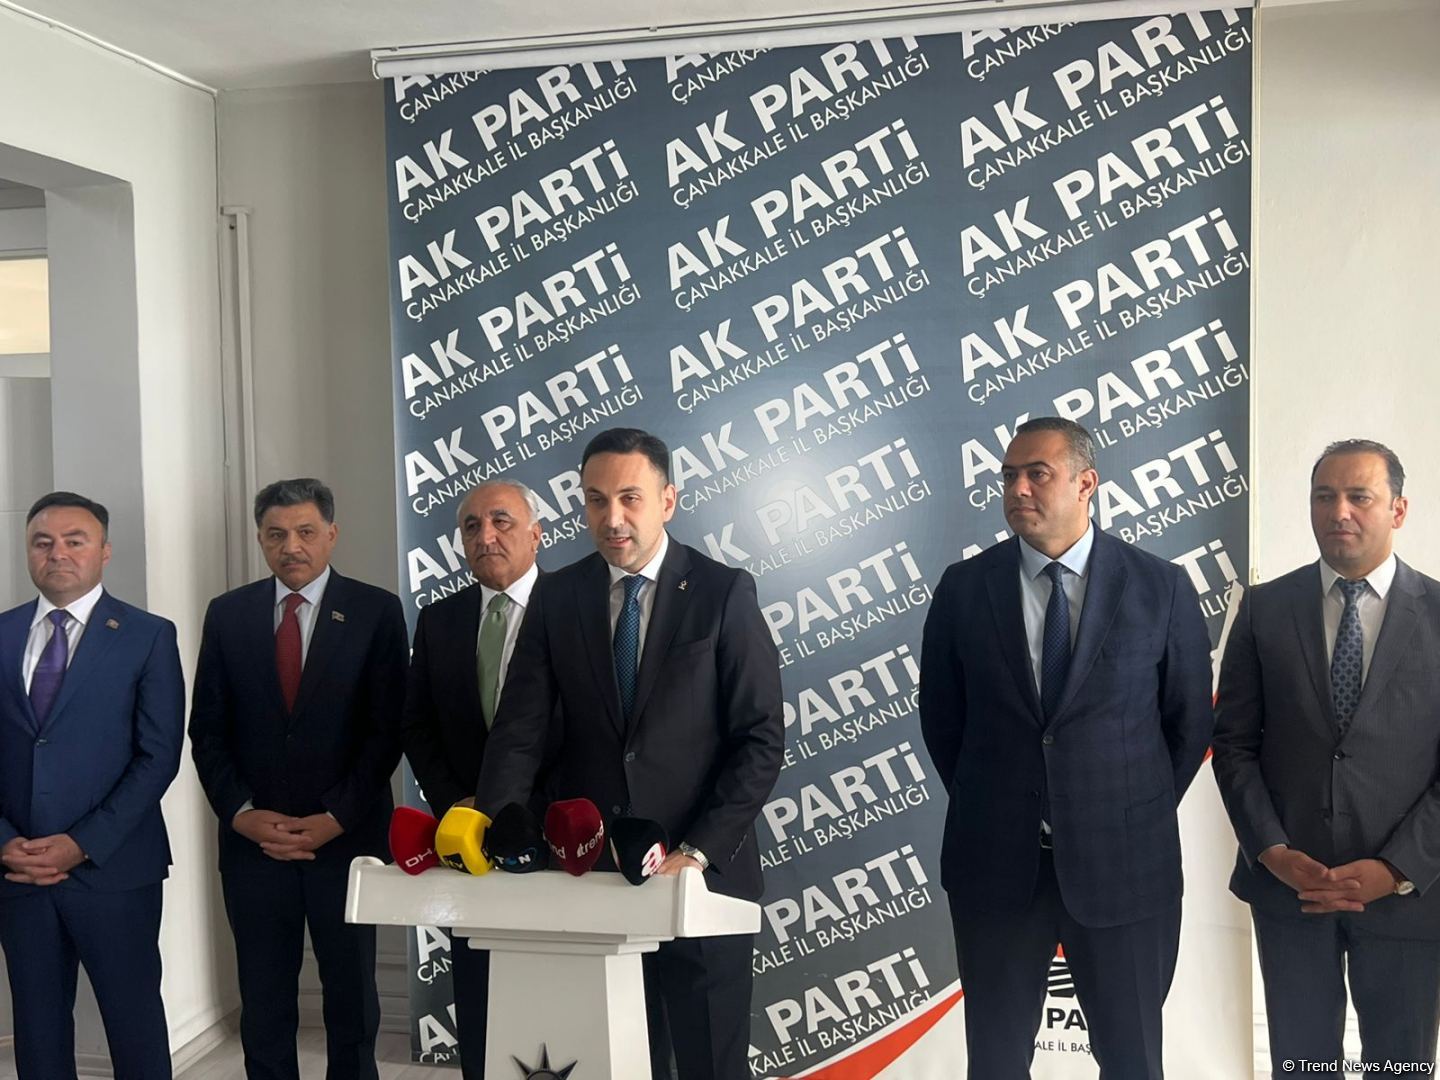 Azərbaycan nümayəndə heyəti AK Partinin Çanaqqala təşkilatını ziyarət edib (FOTO)